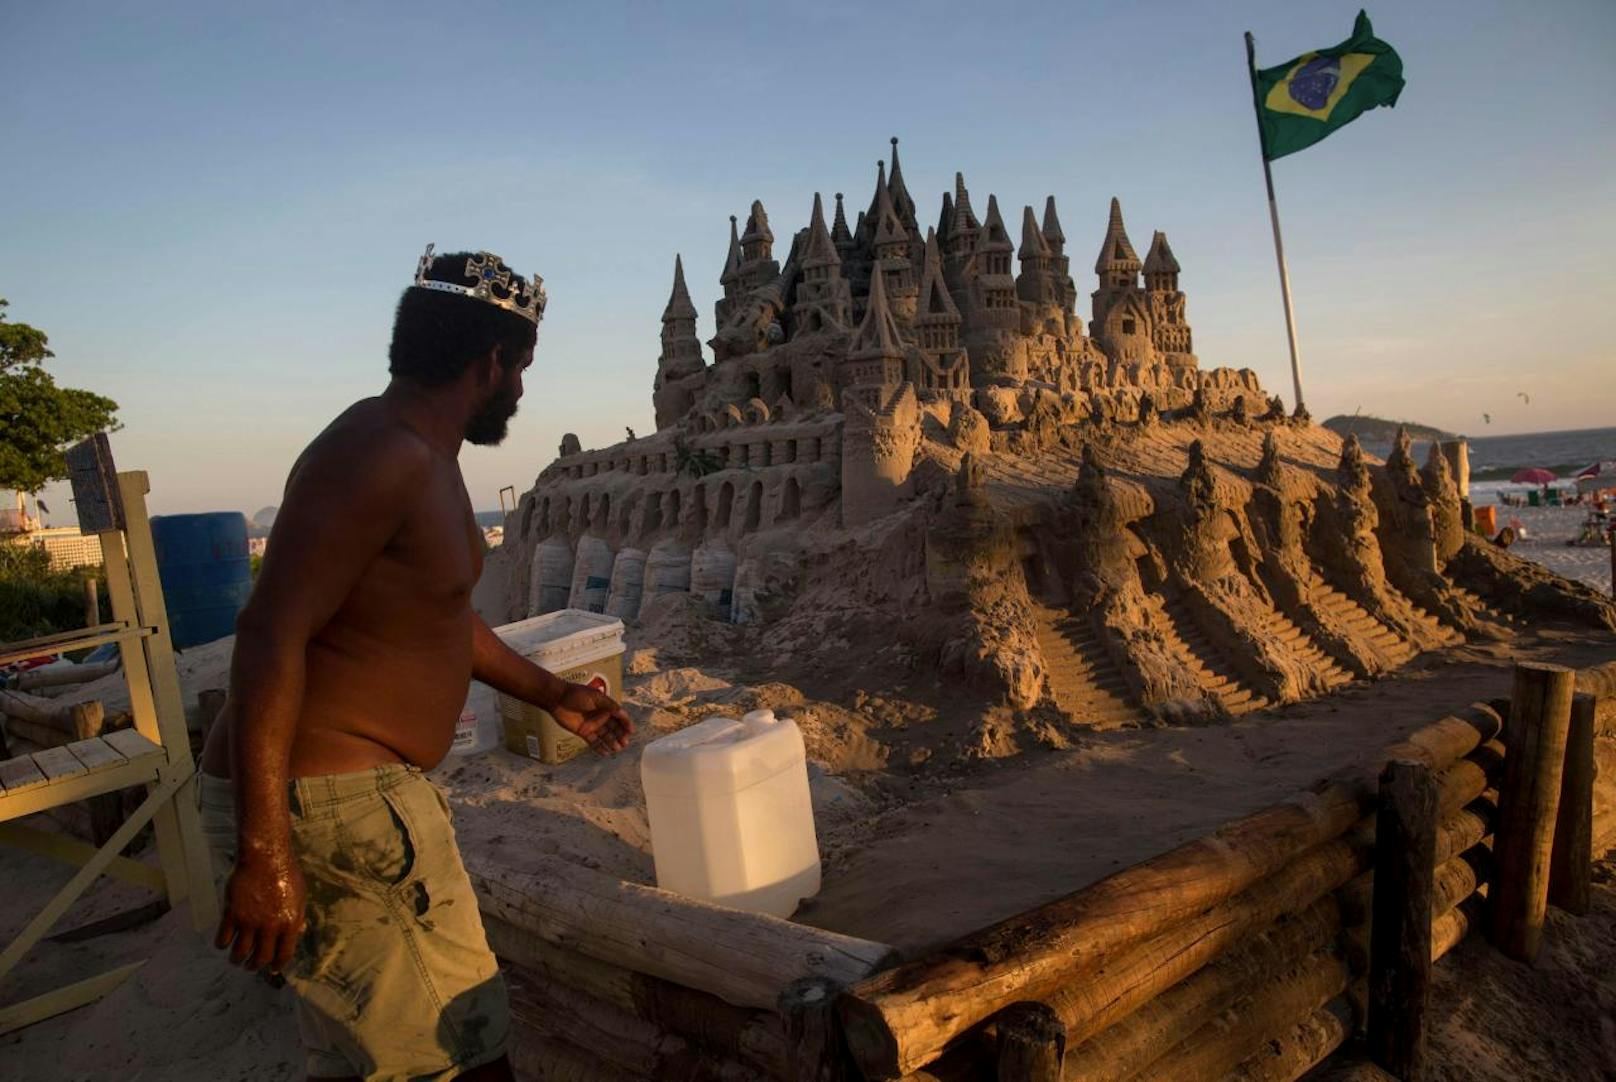 Marcio Mizael Matolias baute die Sandburg vor 22 Jahren am Strand der brasilianischen Metropole.